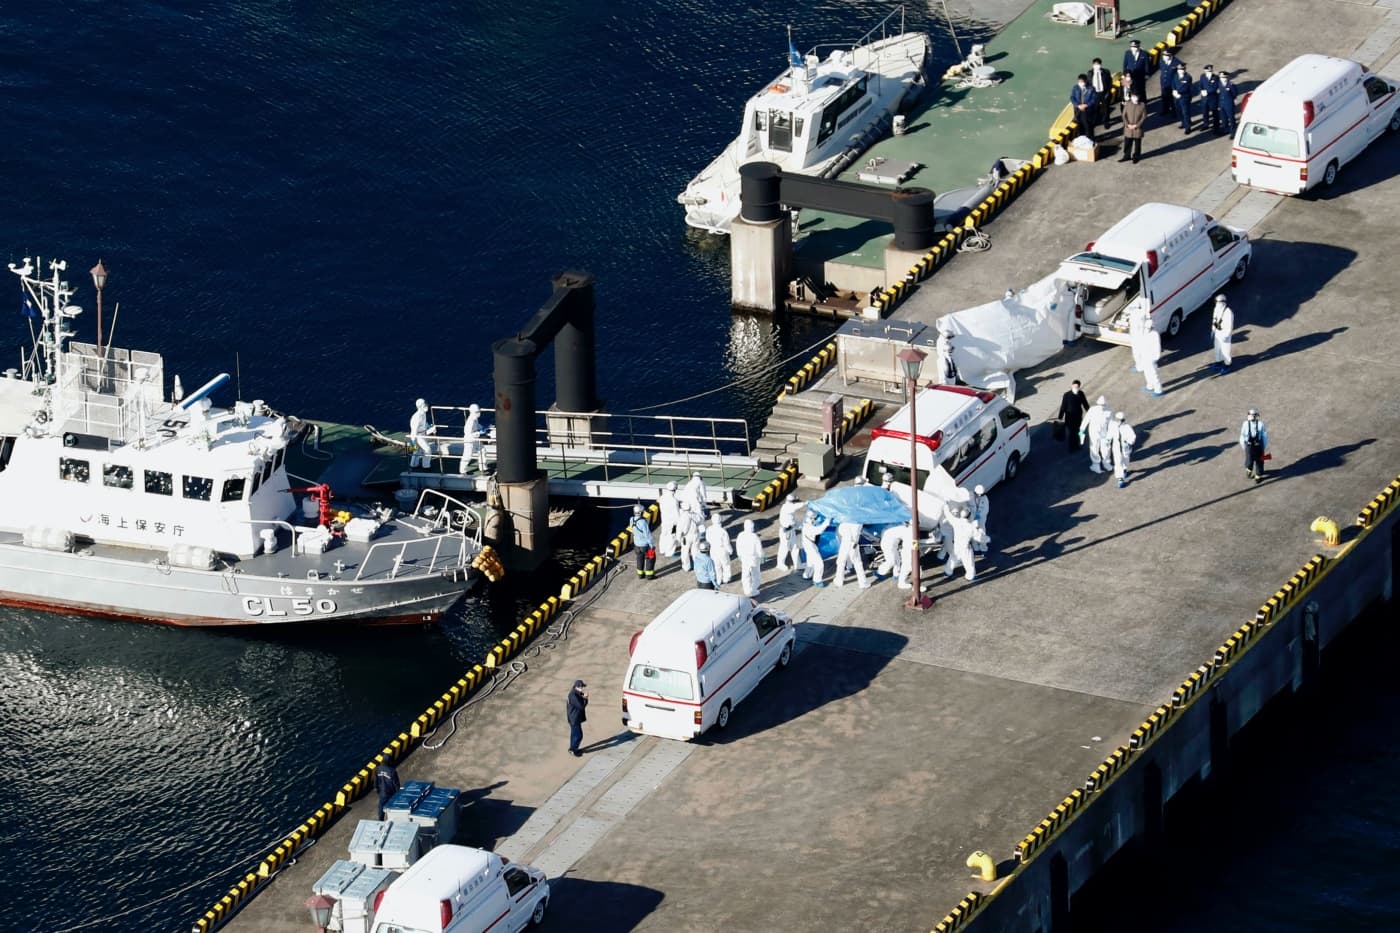 Három magyar is van a Japán mellett karanténba helyezett hajón, próbálnak kapcsolatba lépni velük